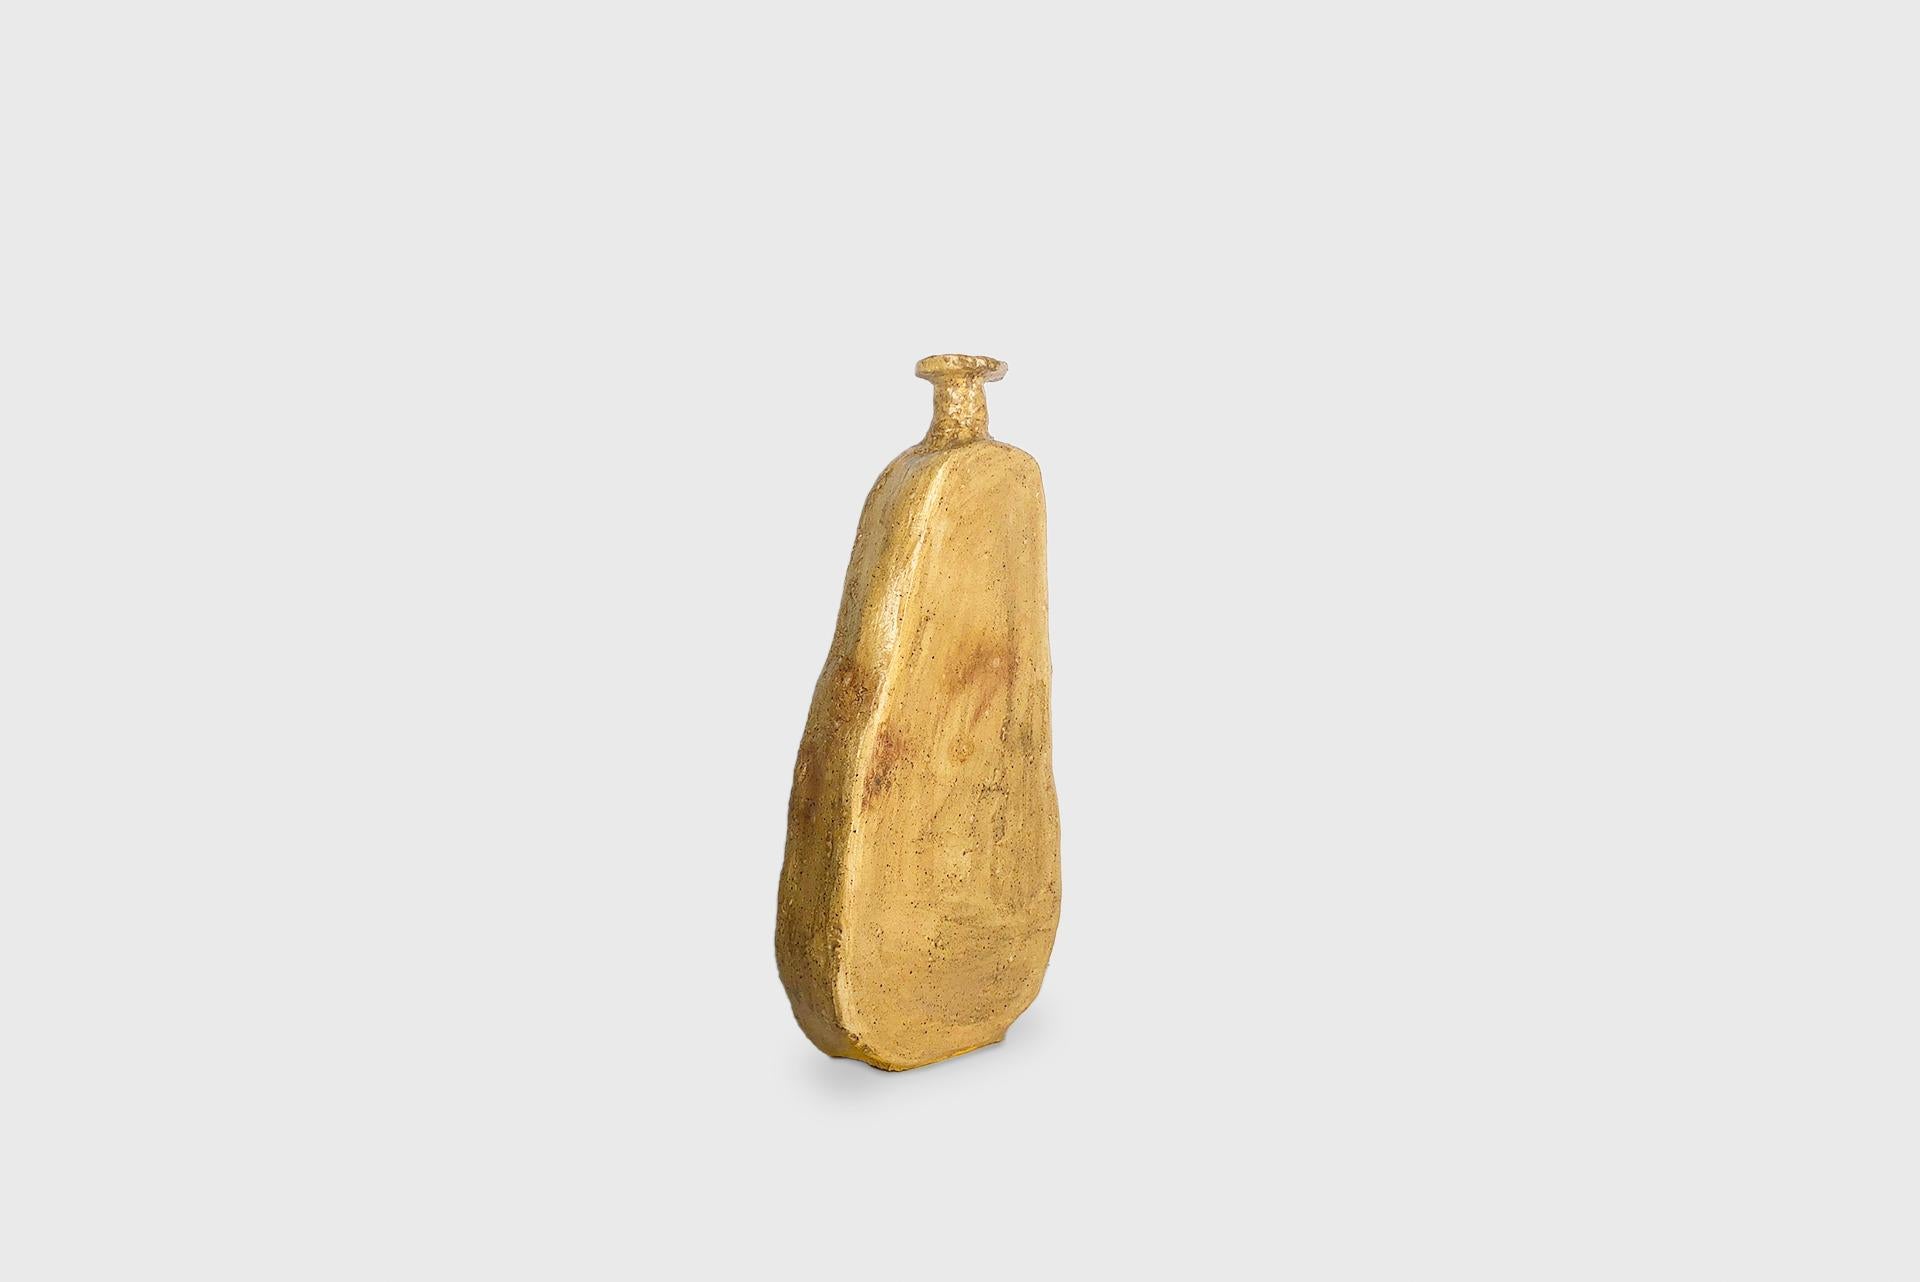 Ceramic vase model “Otem”
From the series 